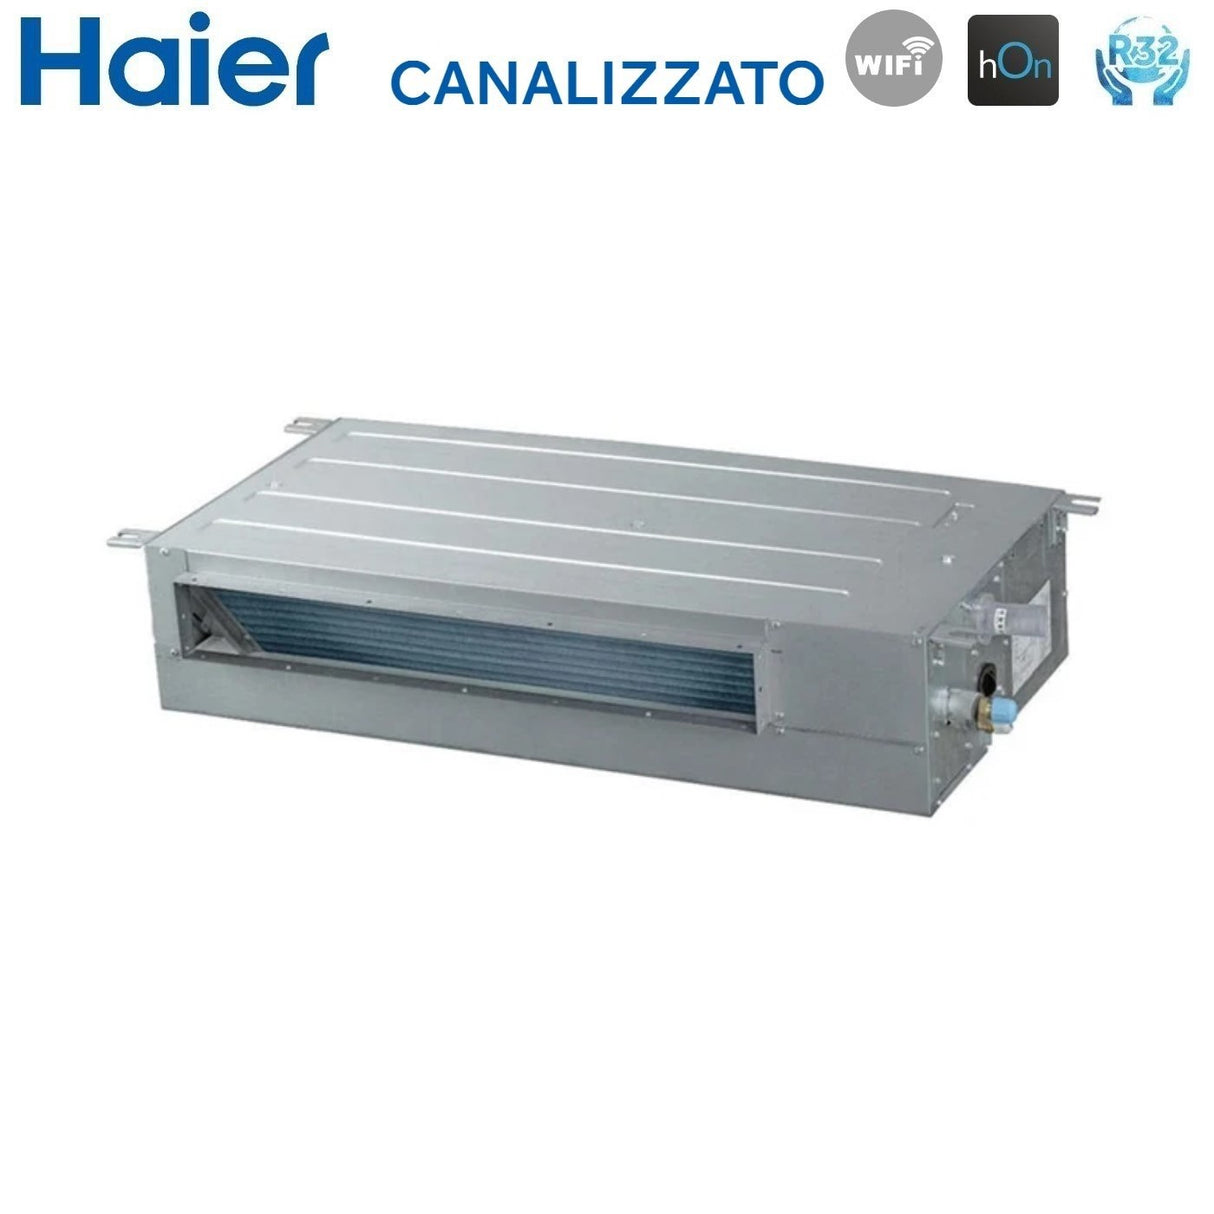 immagine-7-haier-climatizzatore-condizionatore-haier-inverter-canalizzato-slim-bassa-prevalenza-24000-btu-ad71s2ss1fa-1u71s2sr2fa-r-32-wi-fi-integrato-aa